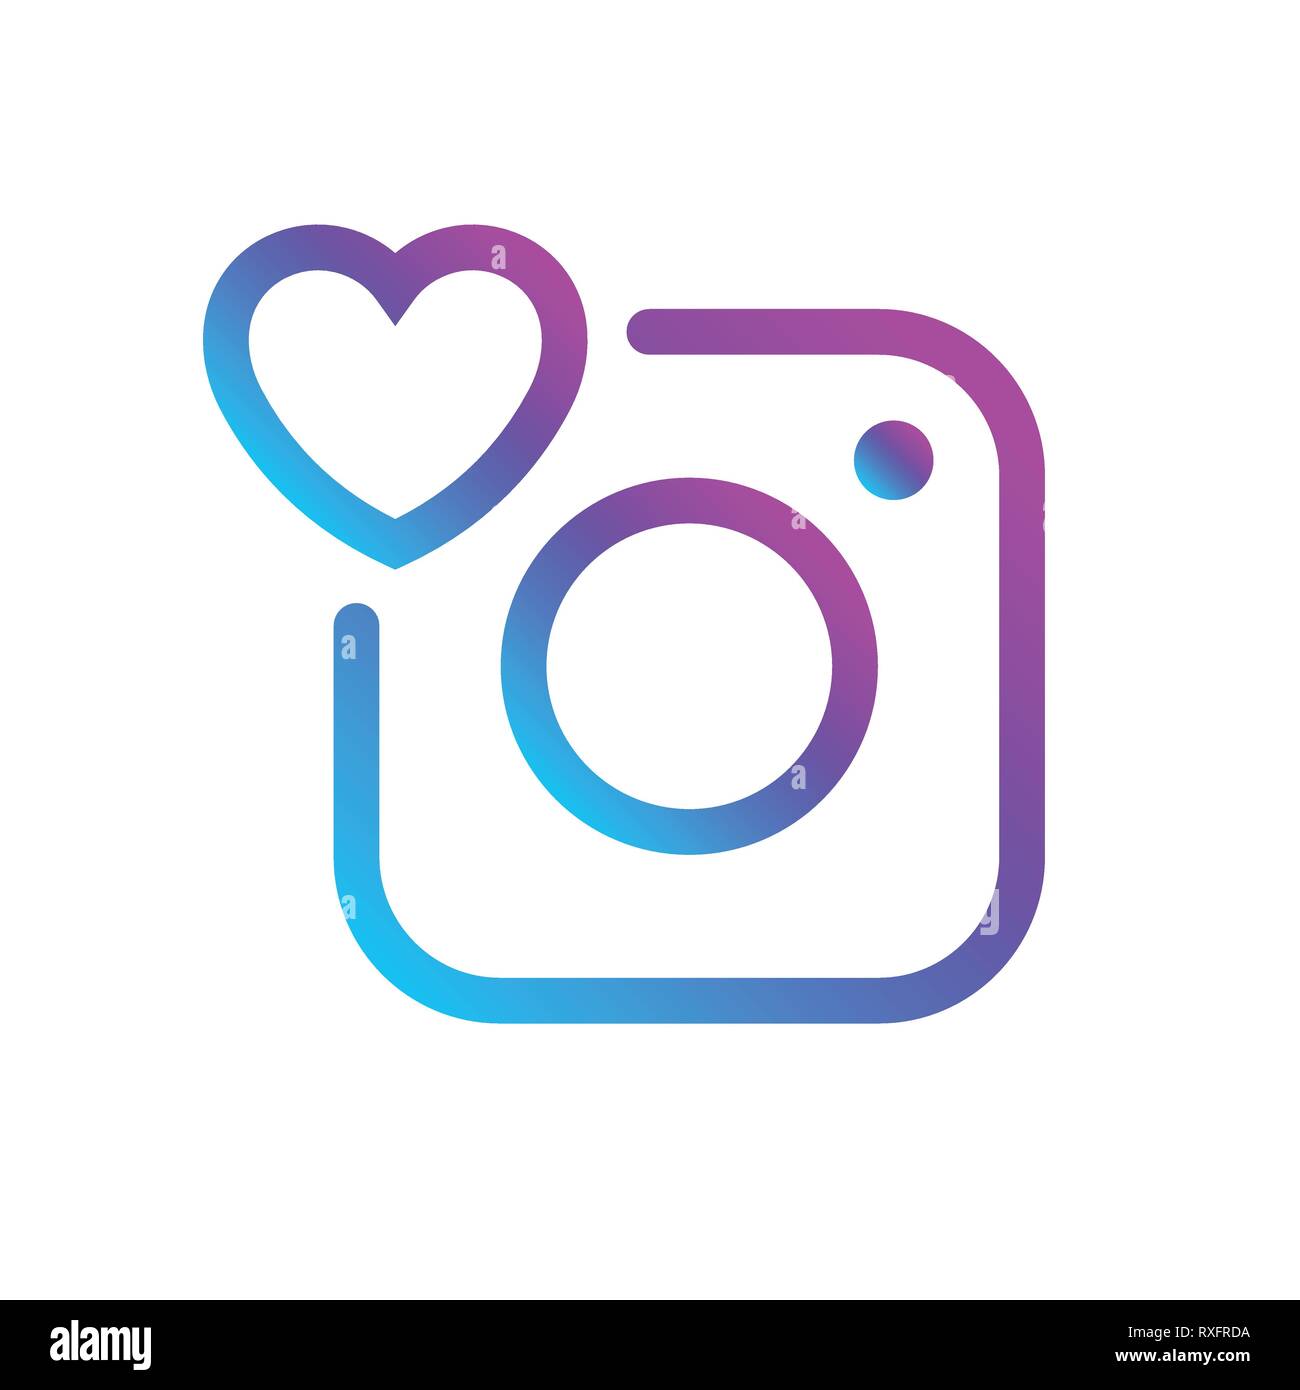 Biểu tượng bình luận Instagram cũng đã trải qua một số cải tiến đáng kể, với một nút bình luận nhấn để trả lời nhanh chóng trong cuộc trò chuyện. Hãy tìm hiểu về nút này bằng cách xem hình ảnh liên quan.